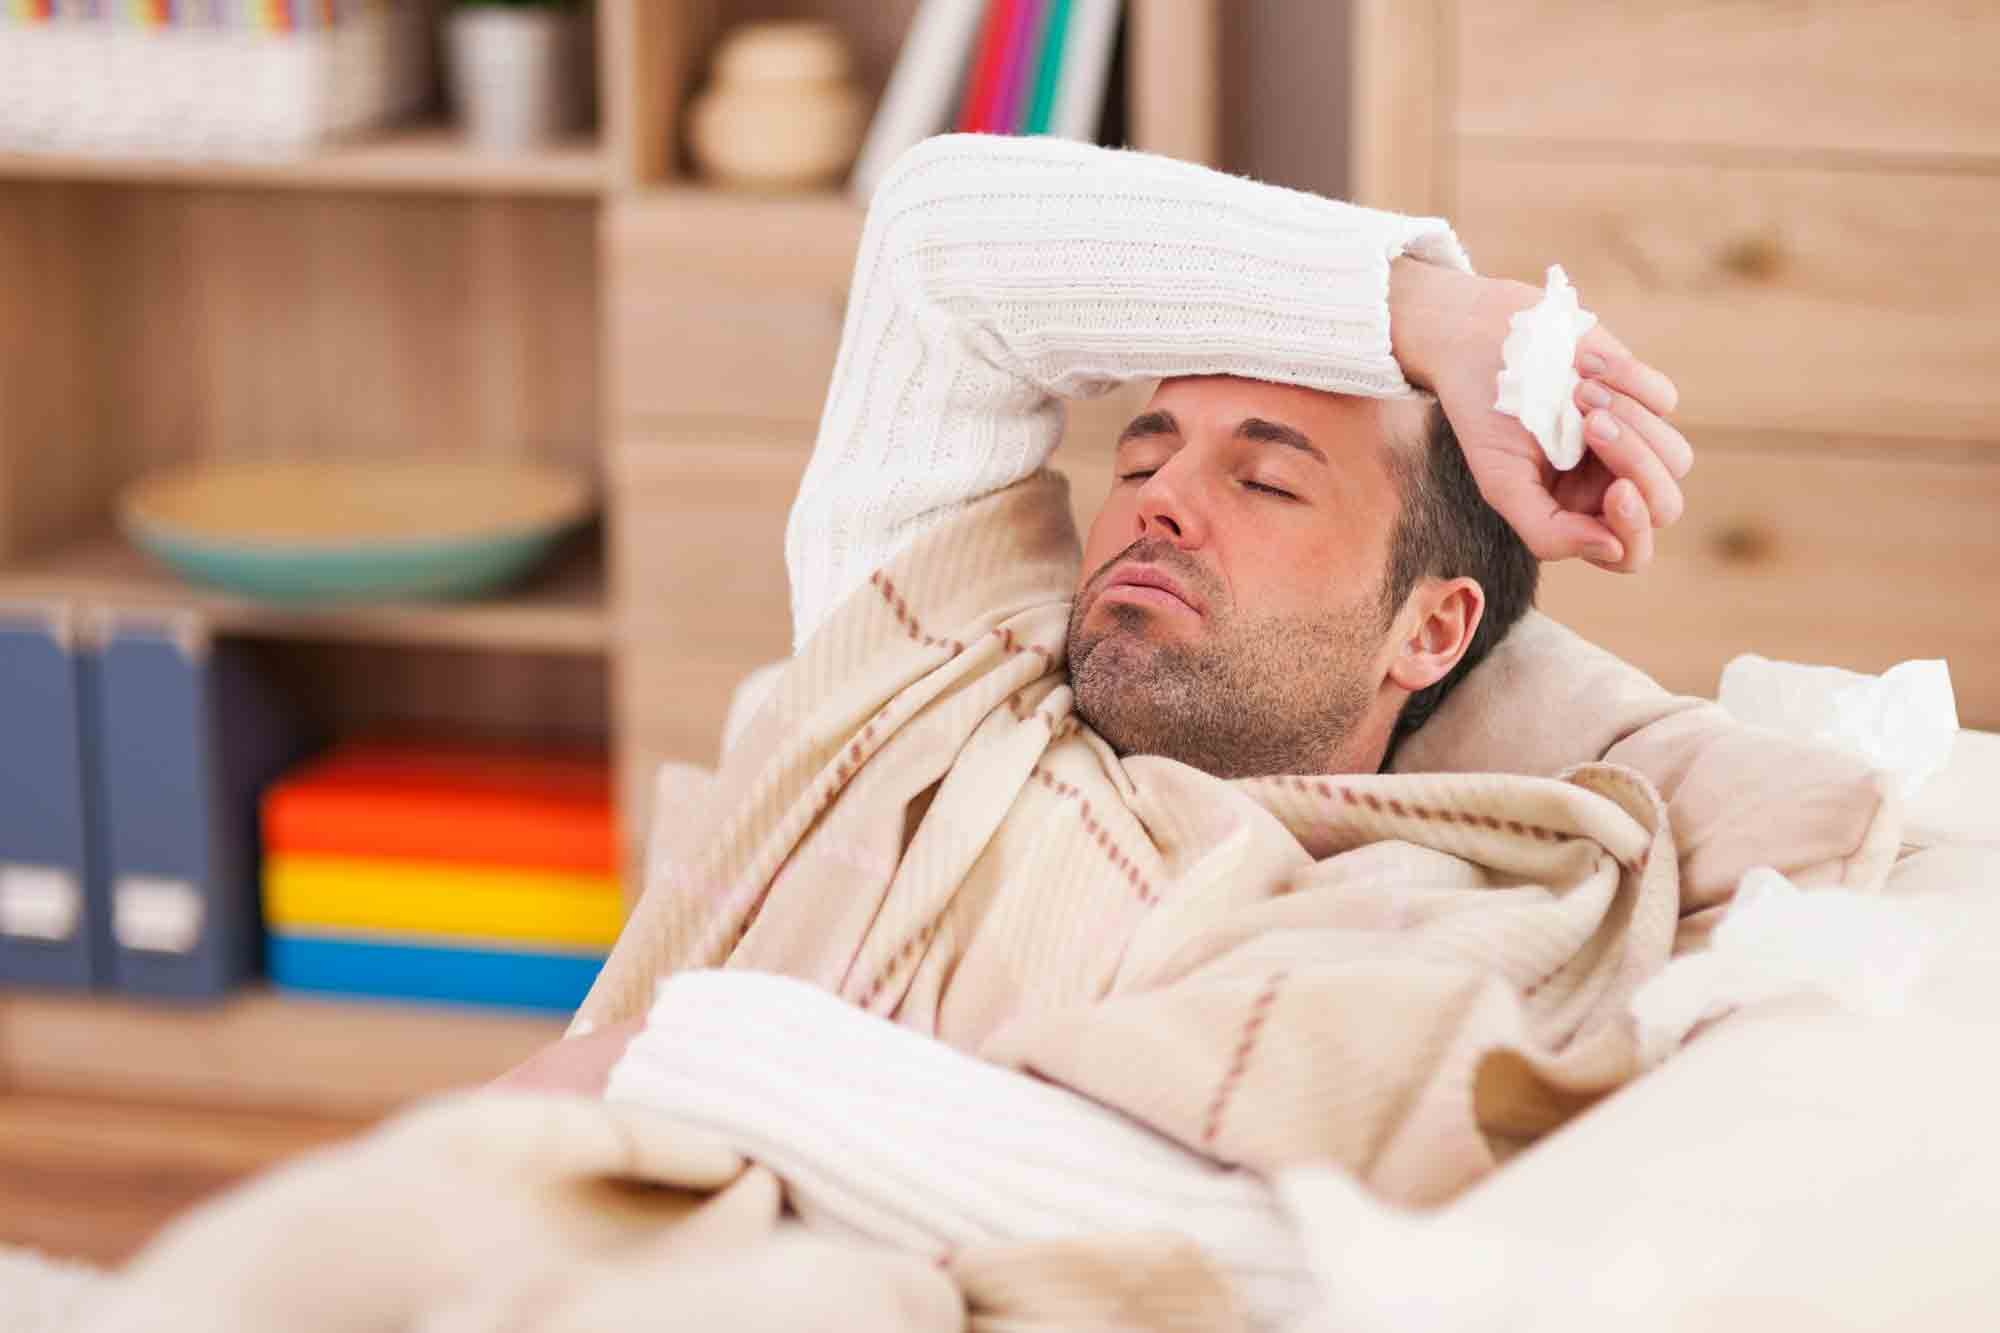 Les symptômes du rhume sont la fatigue et l'écoulement nasal